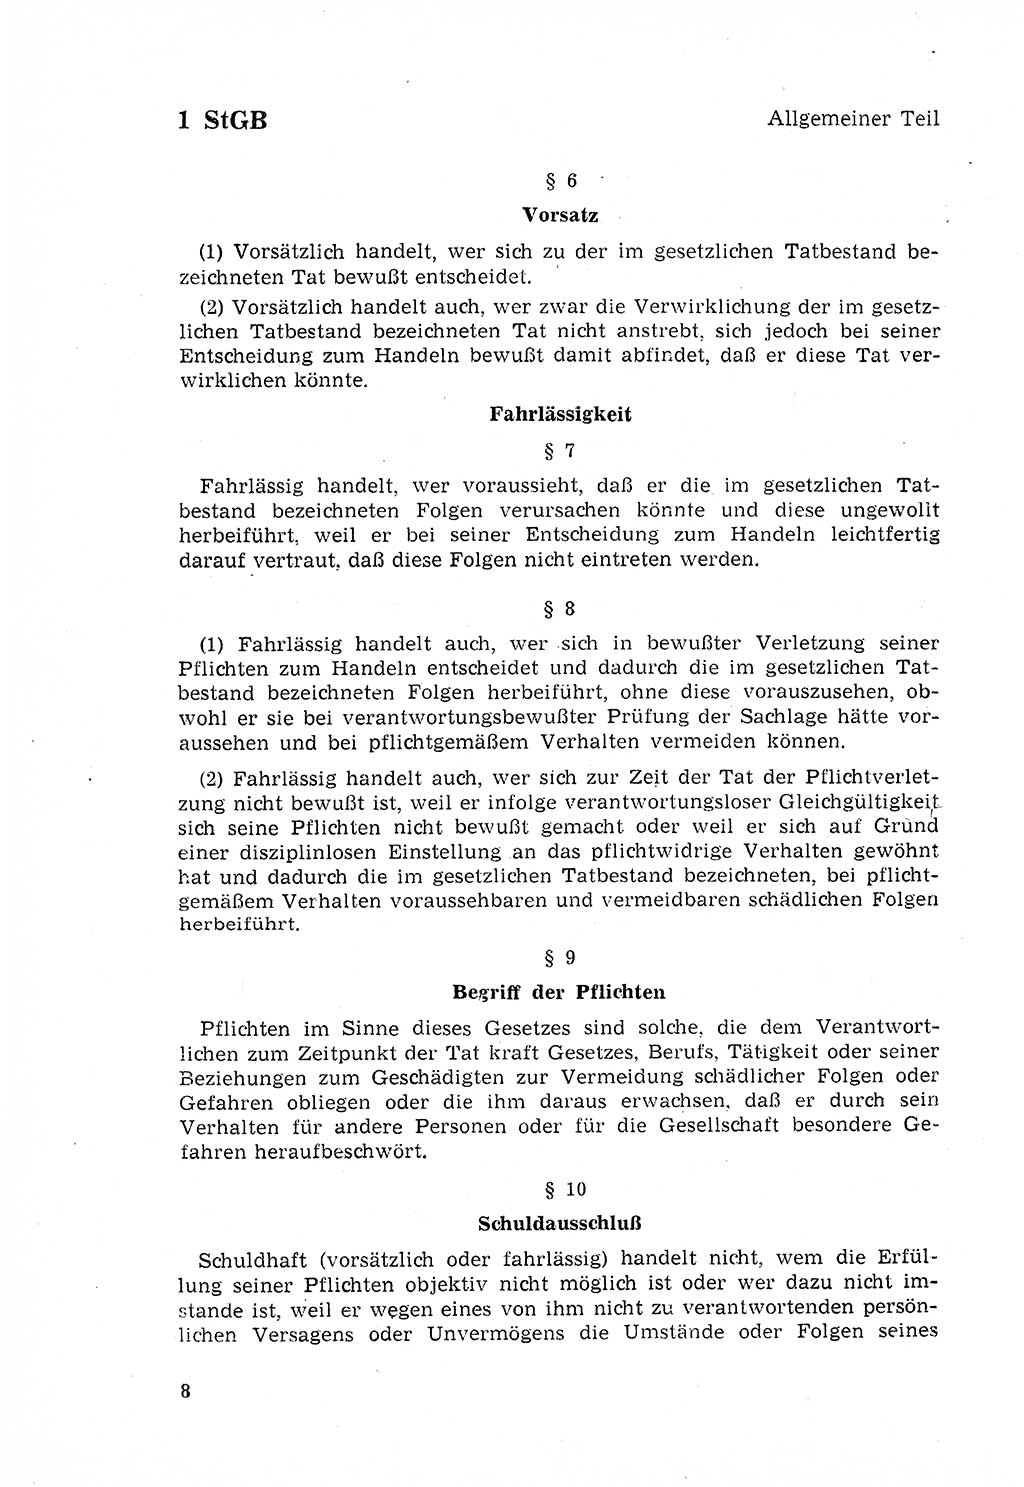 Strafgesetzbuch (StGB) der Deutschen Demokratischen Republik (DDR) 1968, Seite 8 (StGB DDR 1968, S. 8)